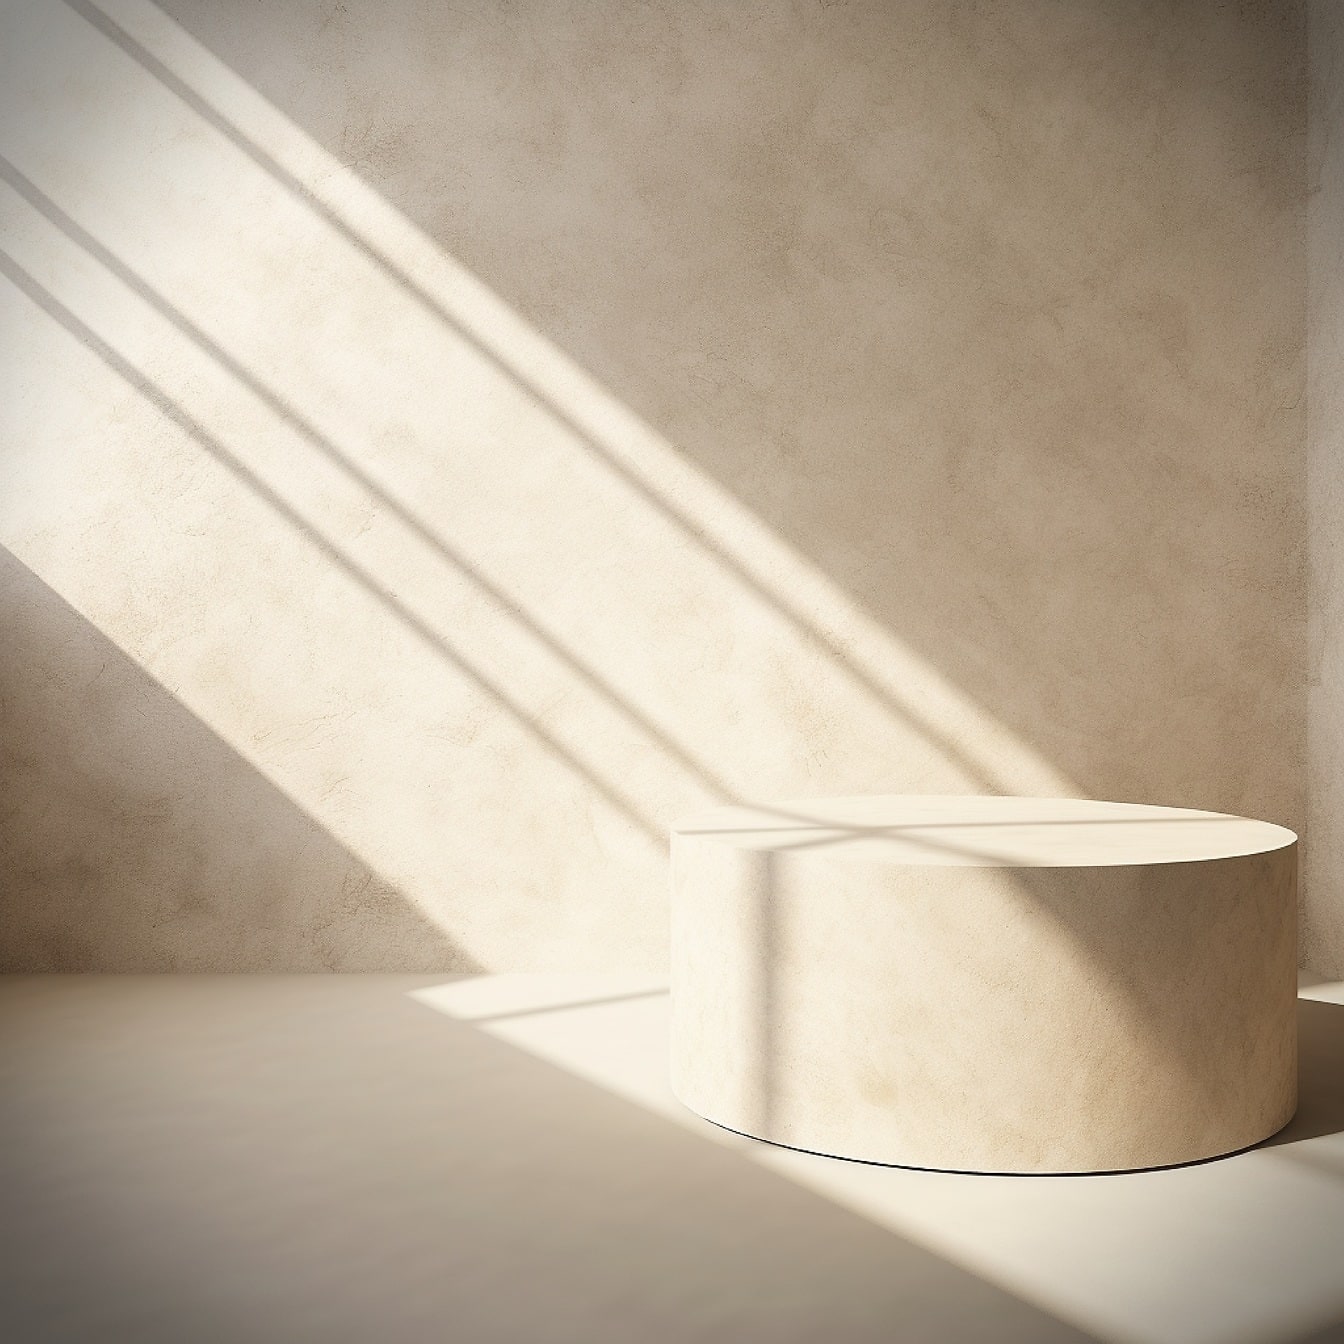 Objet rond en marbre à l’ombre avec mur beige